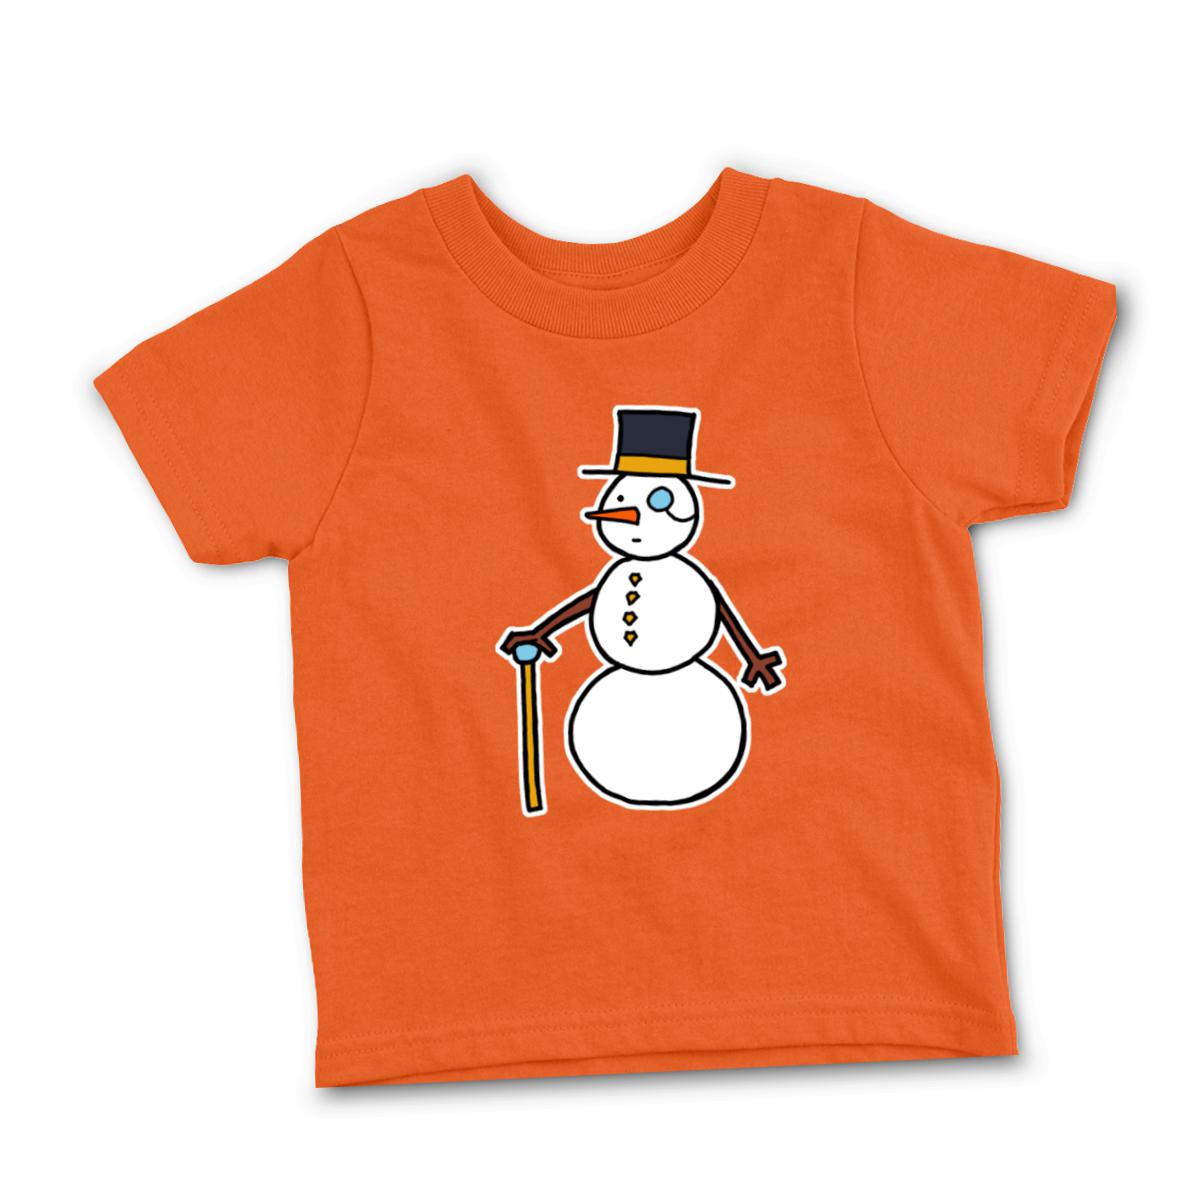 Dapper Snowman Toddler Tee 56T orange